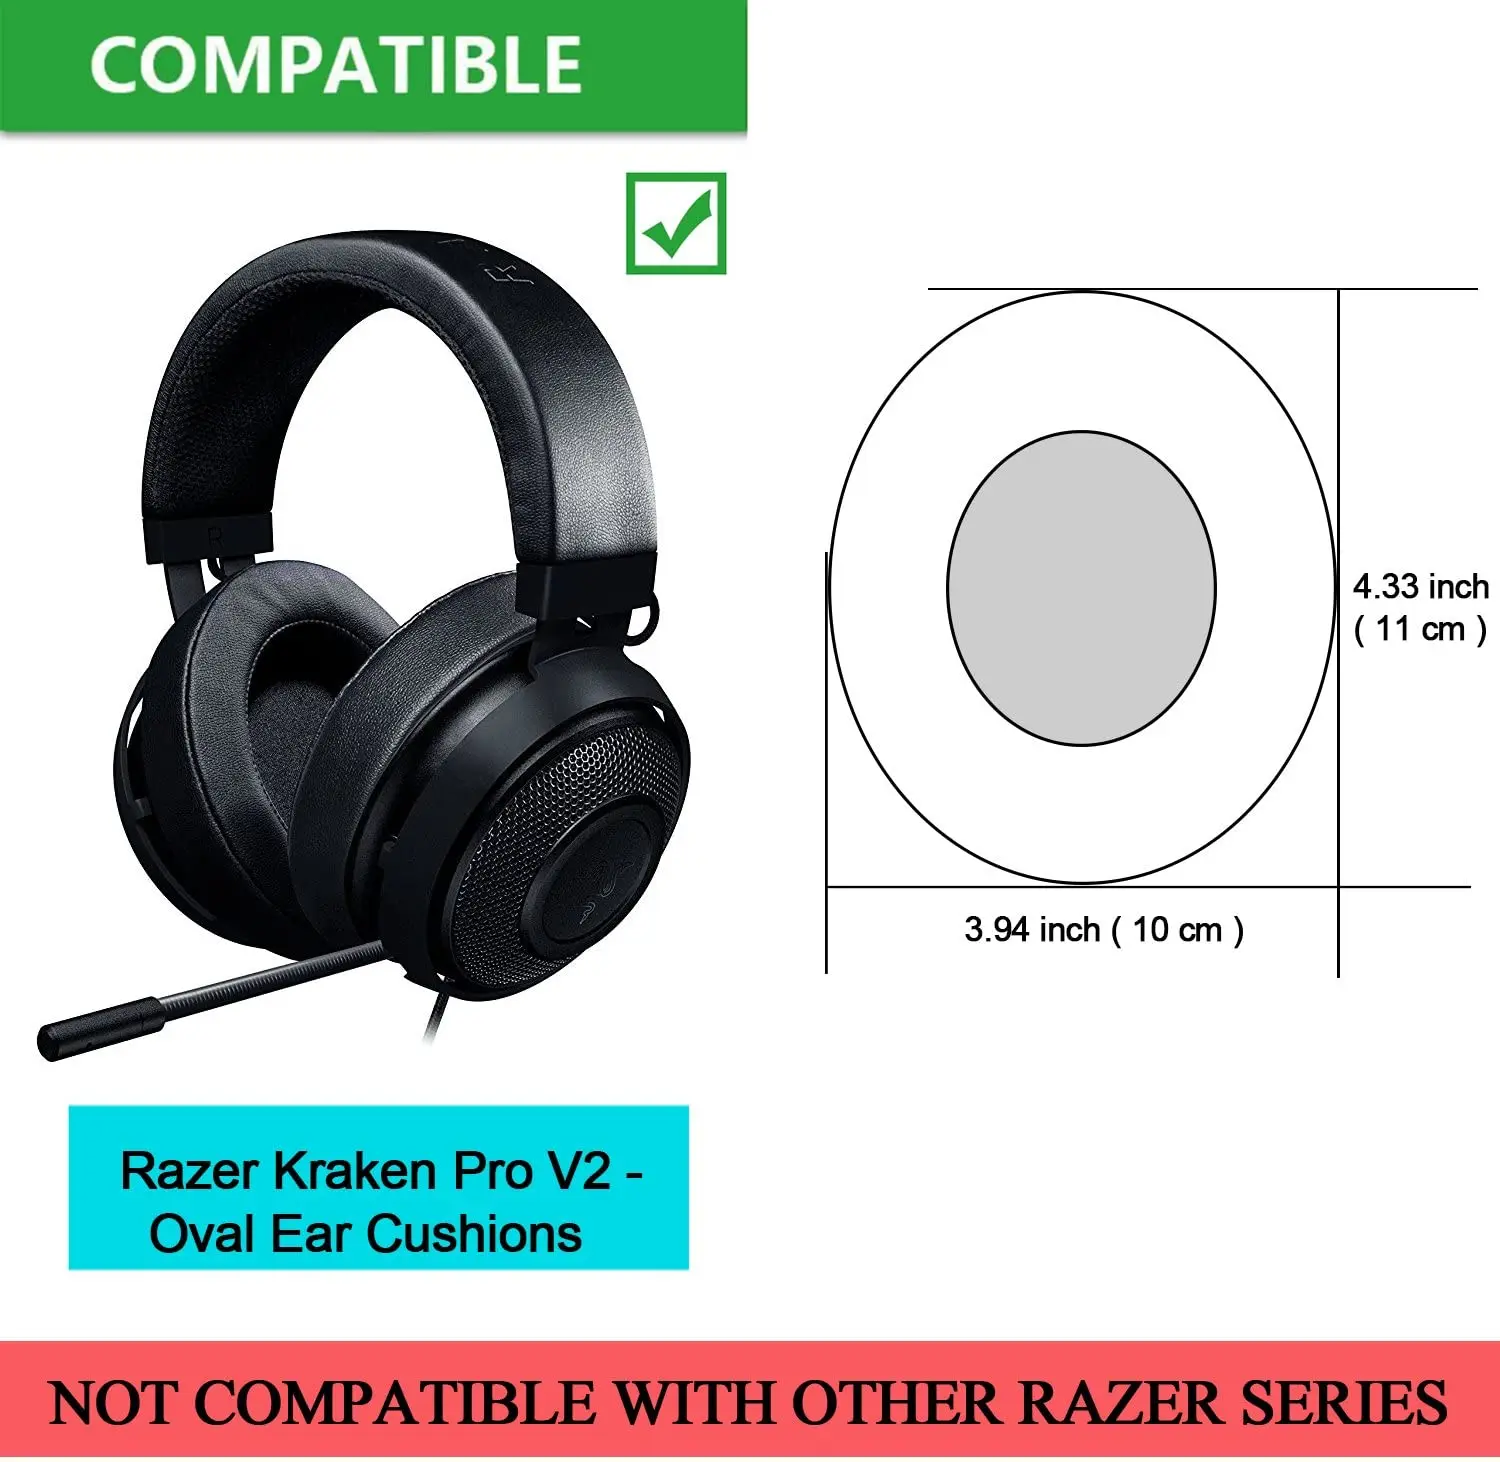 

Replacement Memory Foam Ear Cushion Kit Pad Cover for Razer Kraken Pro V2 - Oval Ear Headphone ONLY Oval (Black)